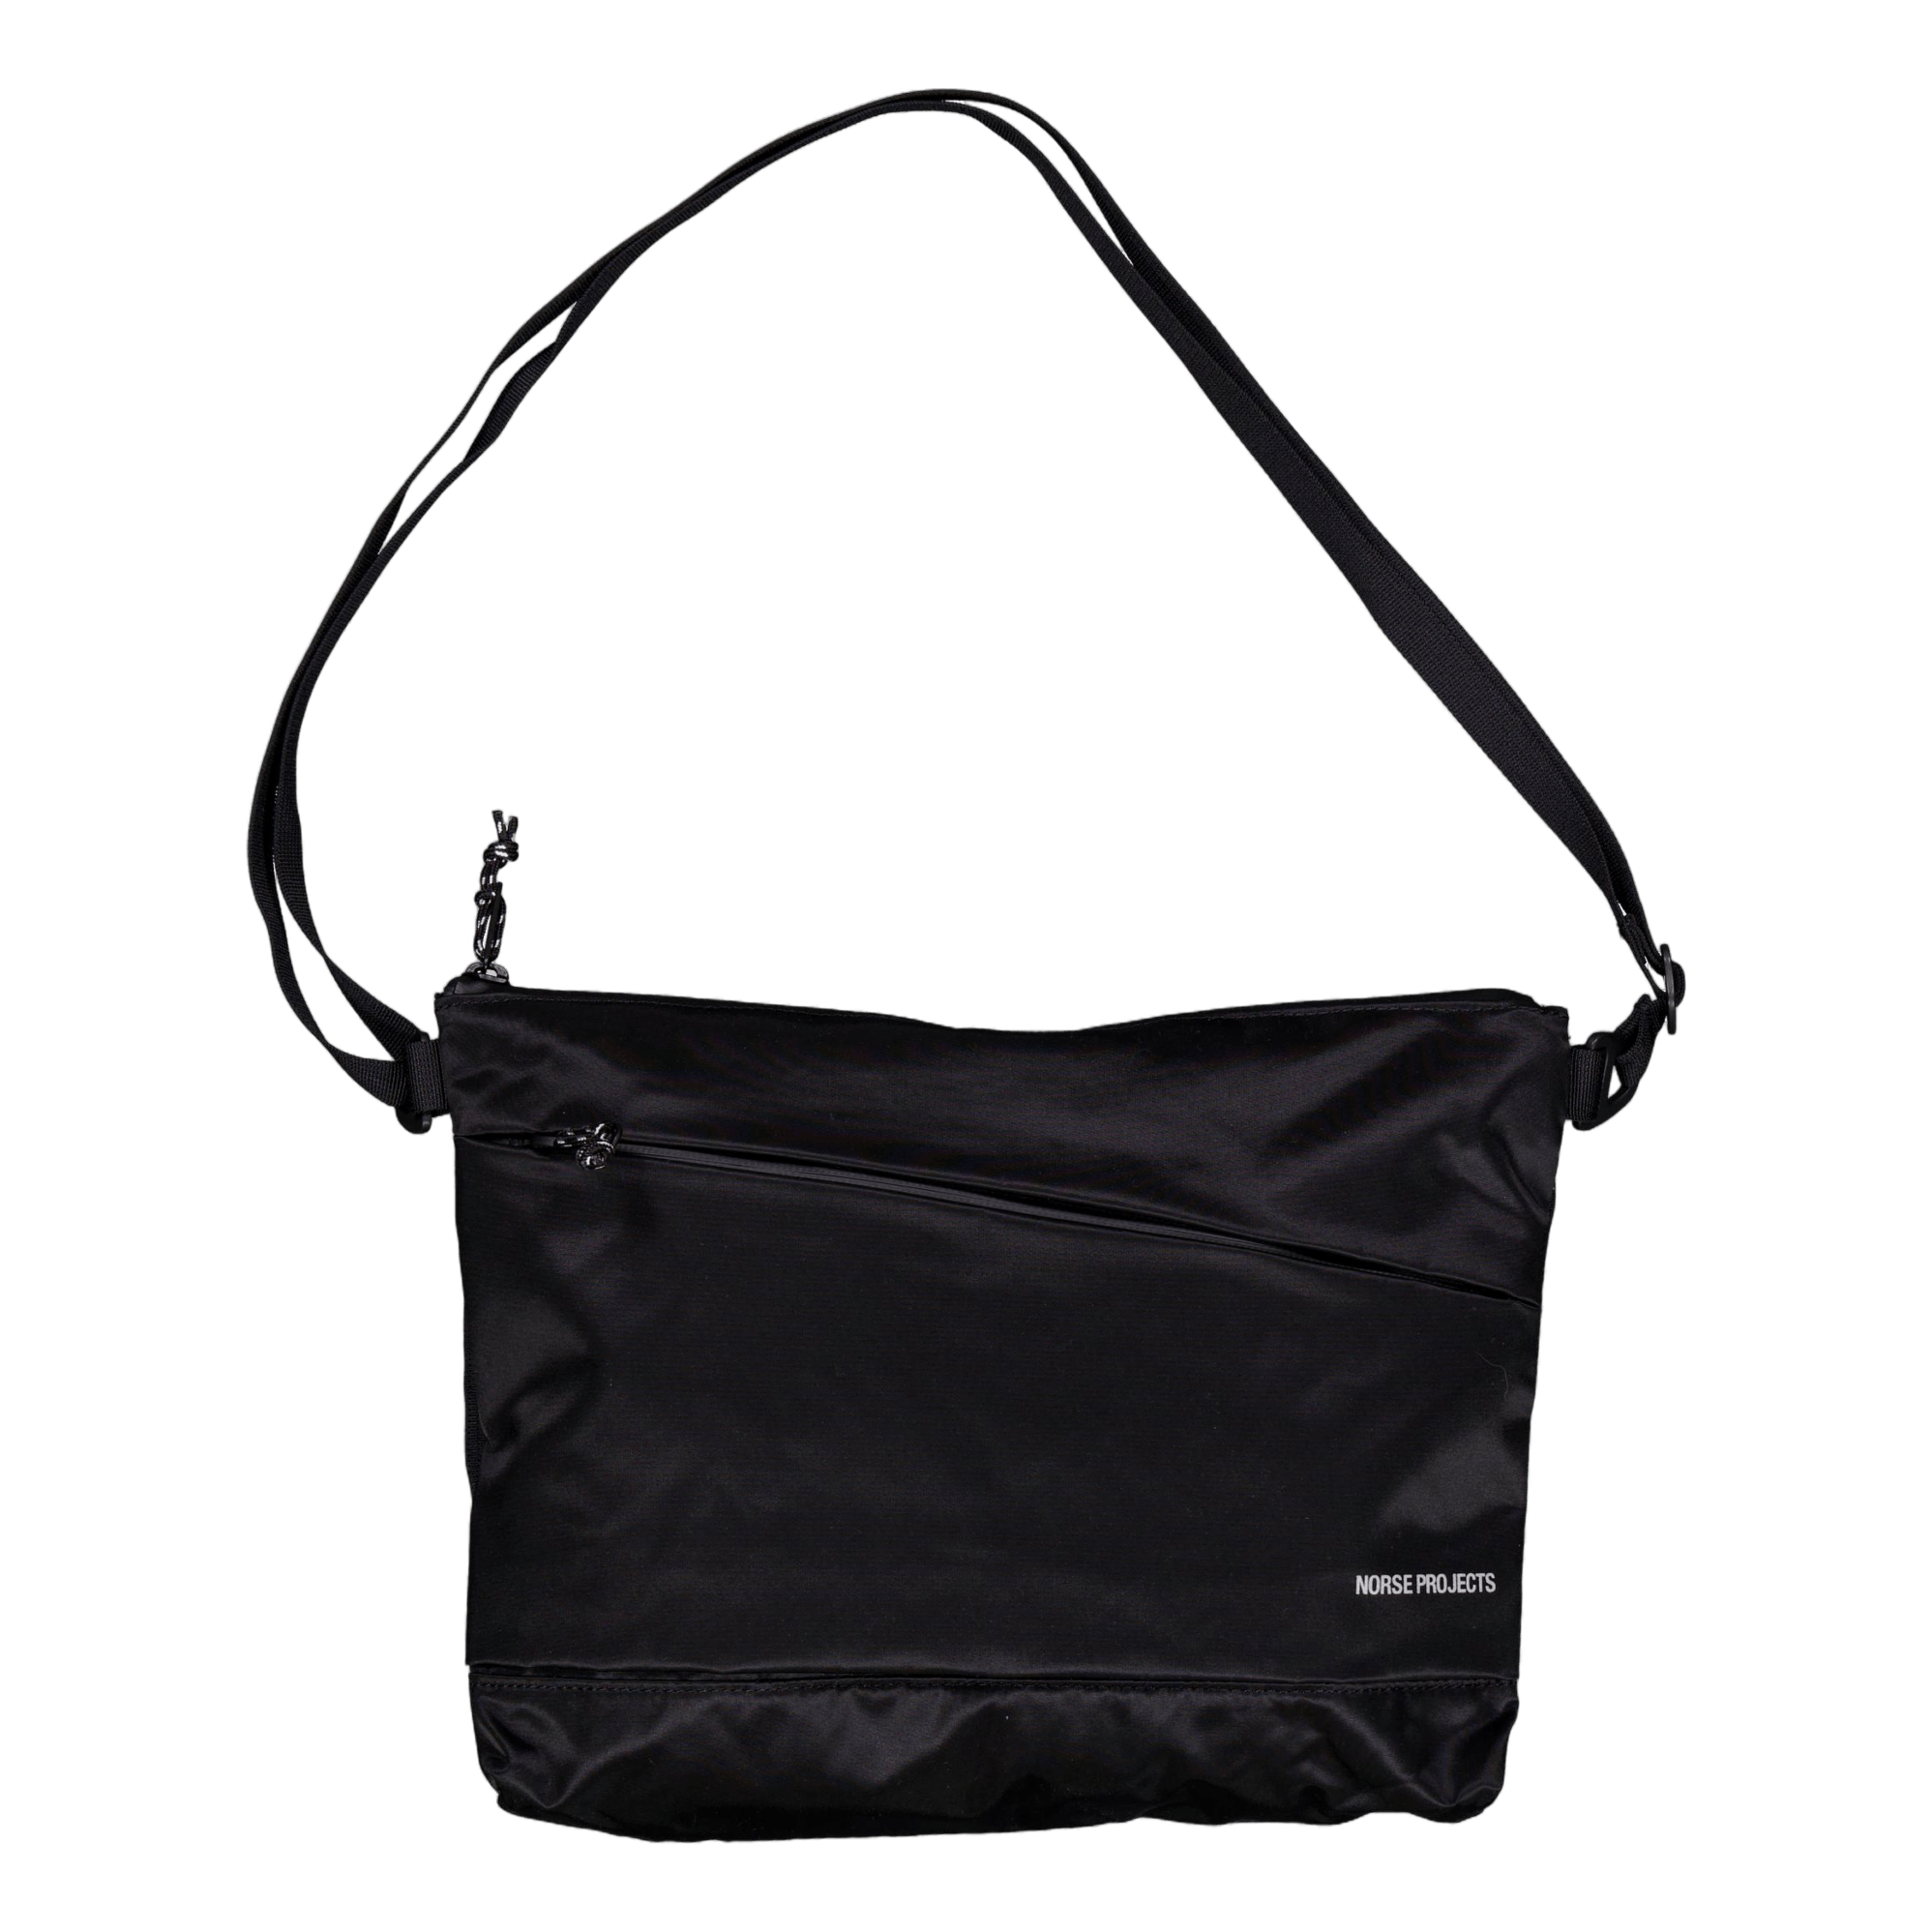 Recycled Nylon Shoulder Bag Black